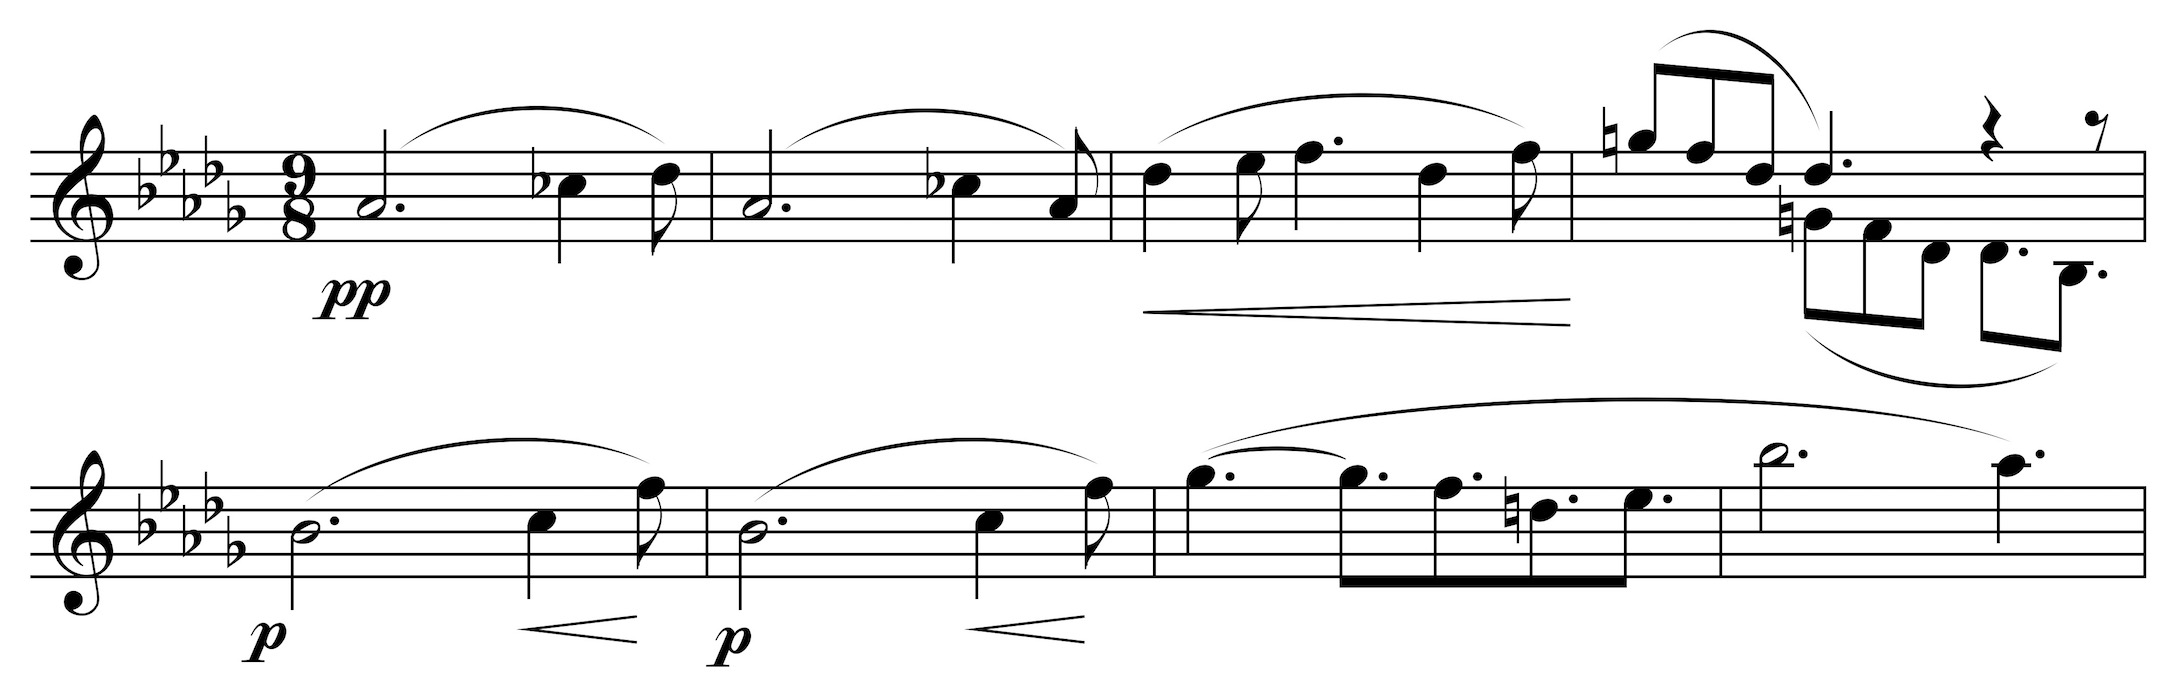 Clair de lune, 2. Thema, Takt 27-34